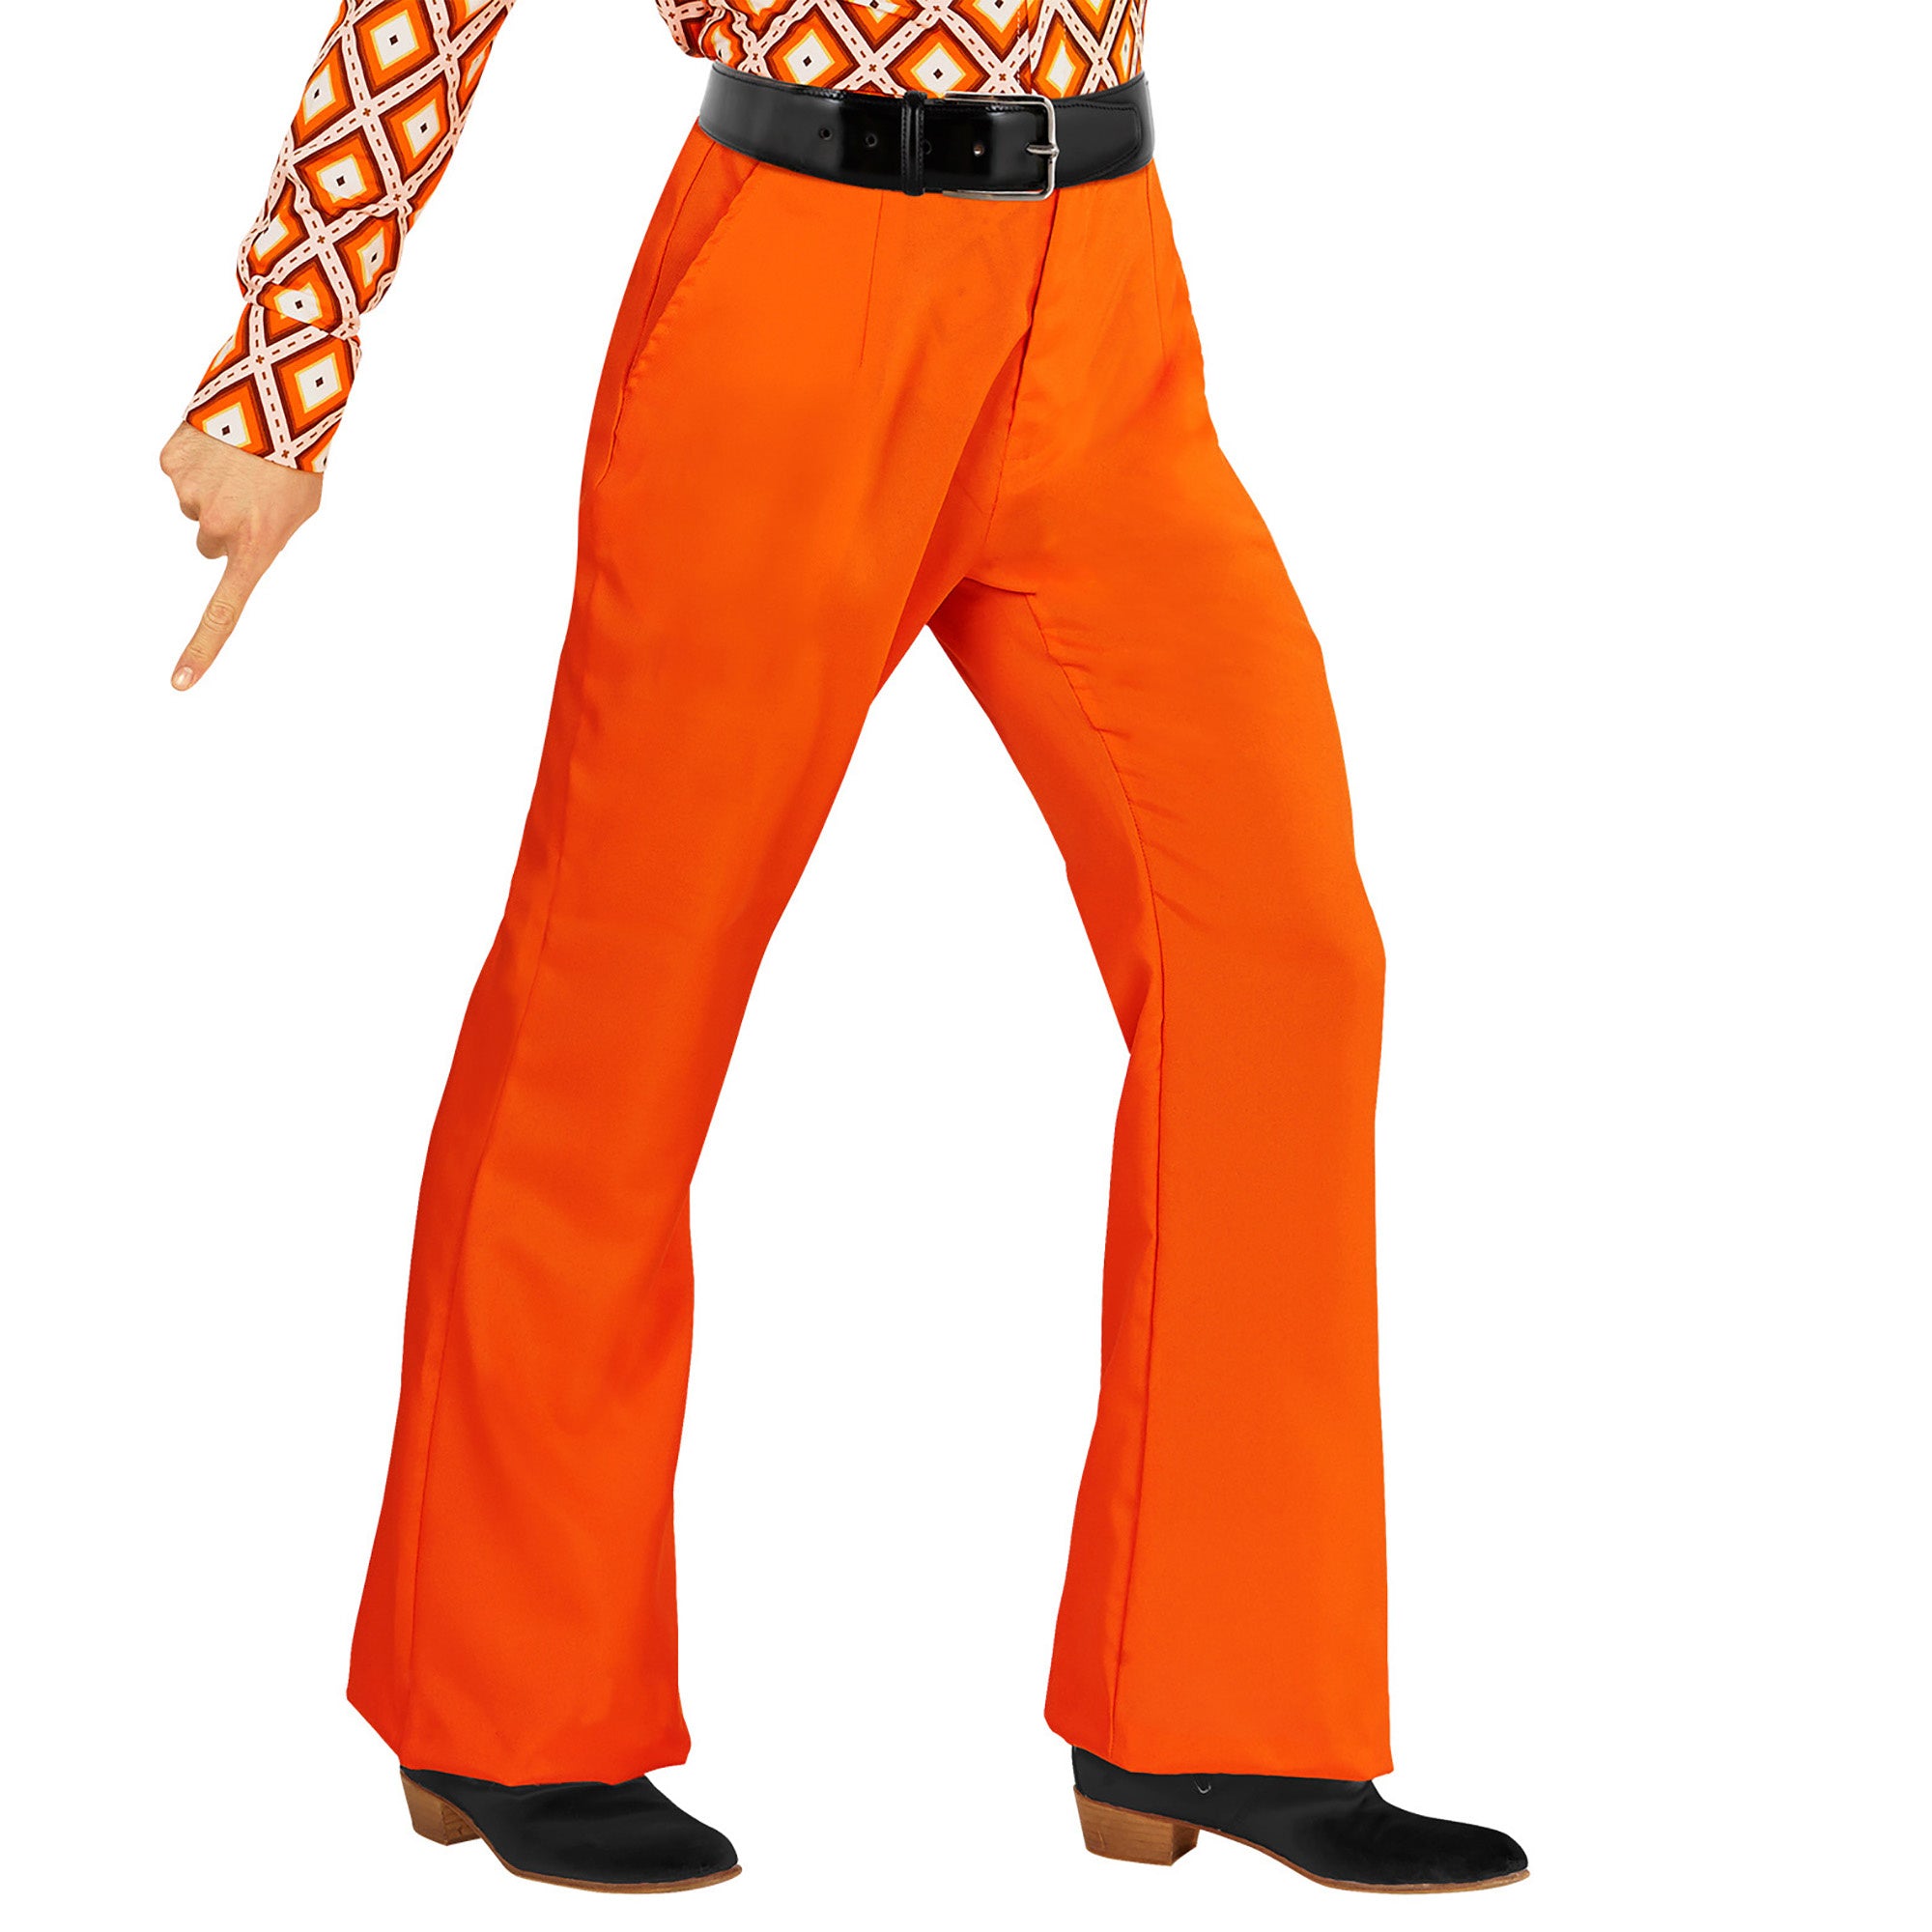 Widmann - Hippie Kostuum - Groovy Gandalf 70s Heren Broek, Oranje Man - oranje - Small / Medium - Carnavalskleding - Verkleedkleding